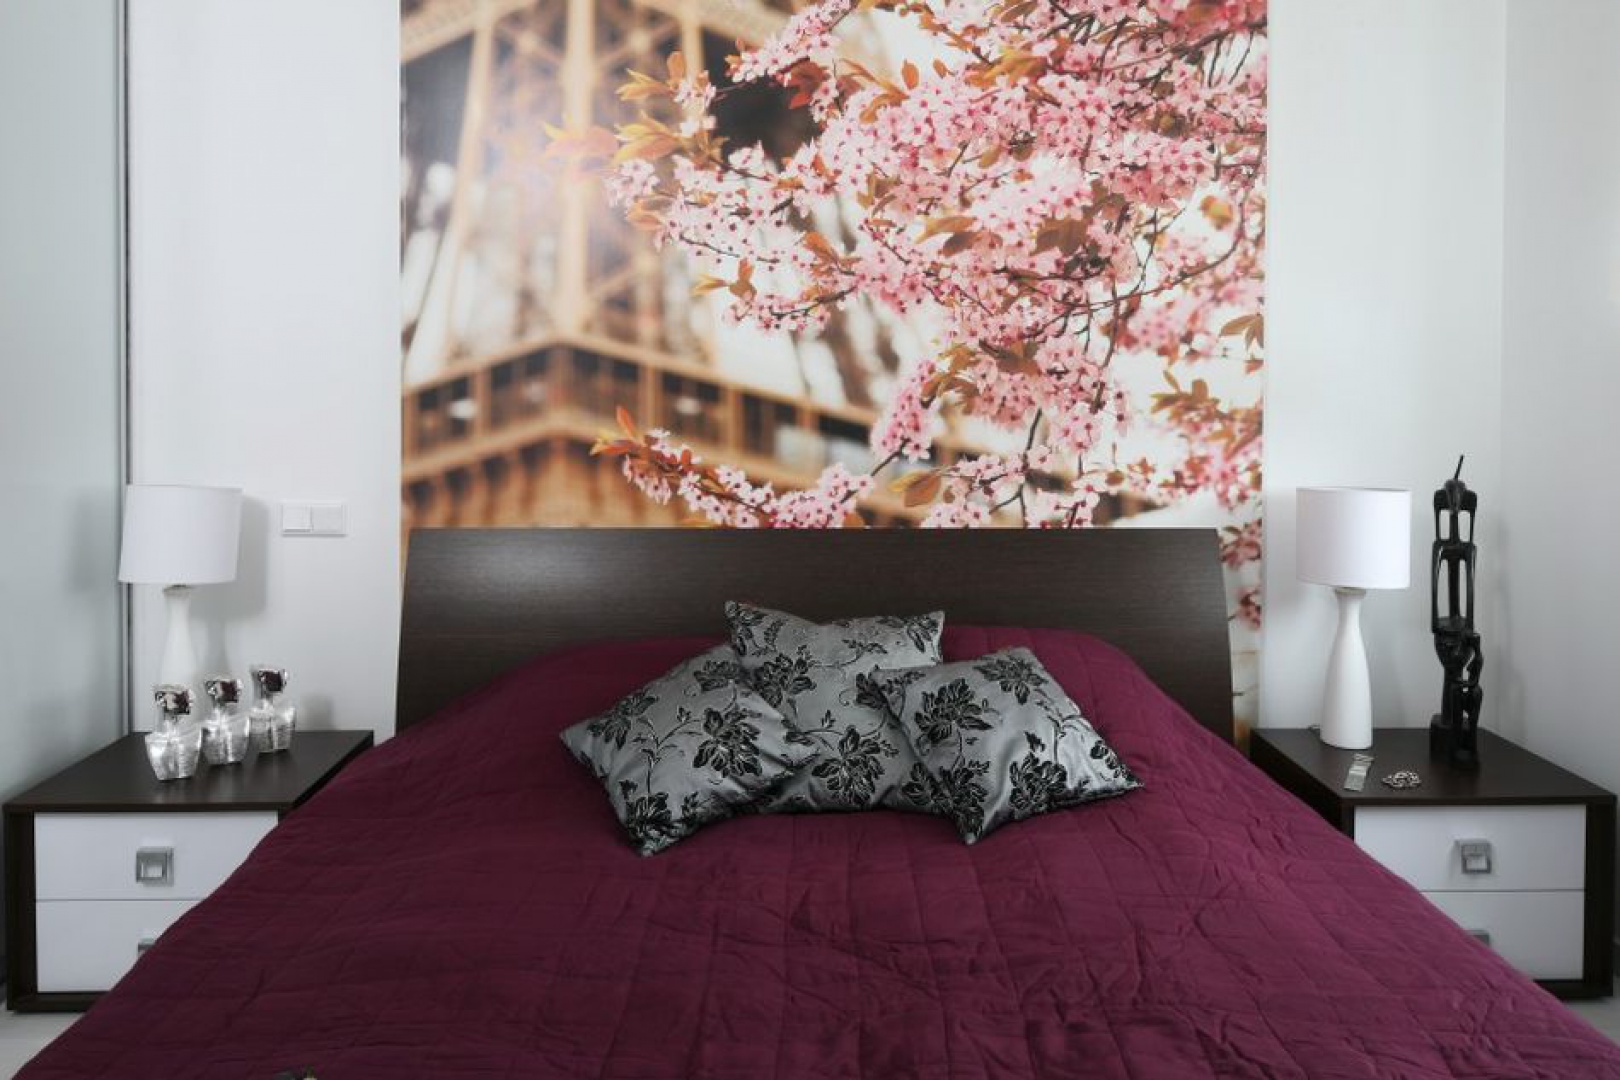 Fototapeta - szybki pomysł na metamorfozę każdego wnętrza. W tej sypialni zdecydowano się na romantyczną fotografię Paryża, która dopełnia stonowane wnętrze sypialni. Projekt: Anna Maria Sokołowska. Fot. Bartosz Jarosz.